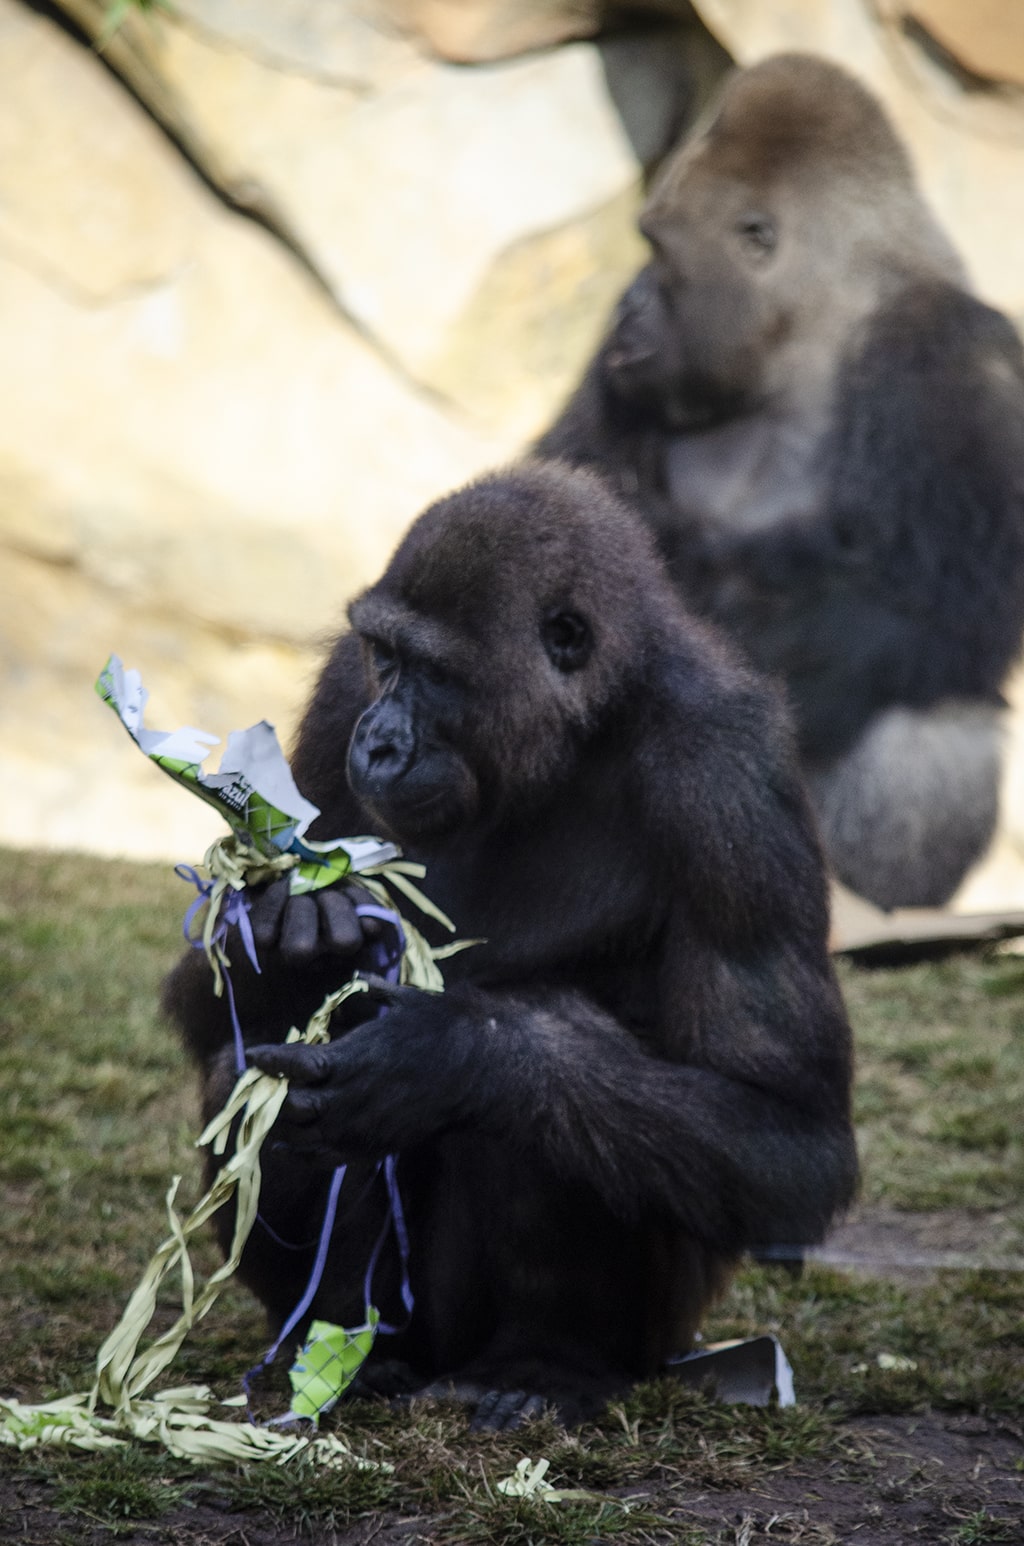 BIOPARC celebra el 9 aniversario de Ebo el primer gorila nacido en la Comunidad Valenciana